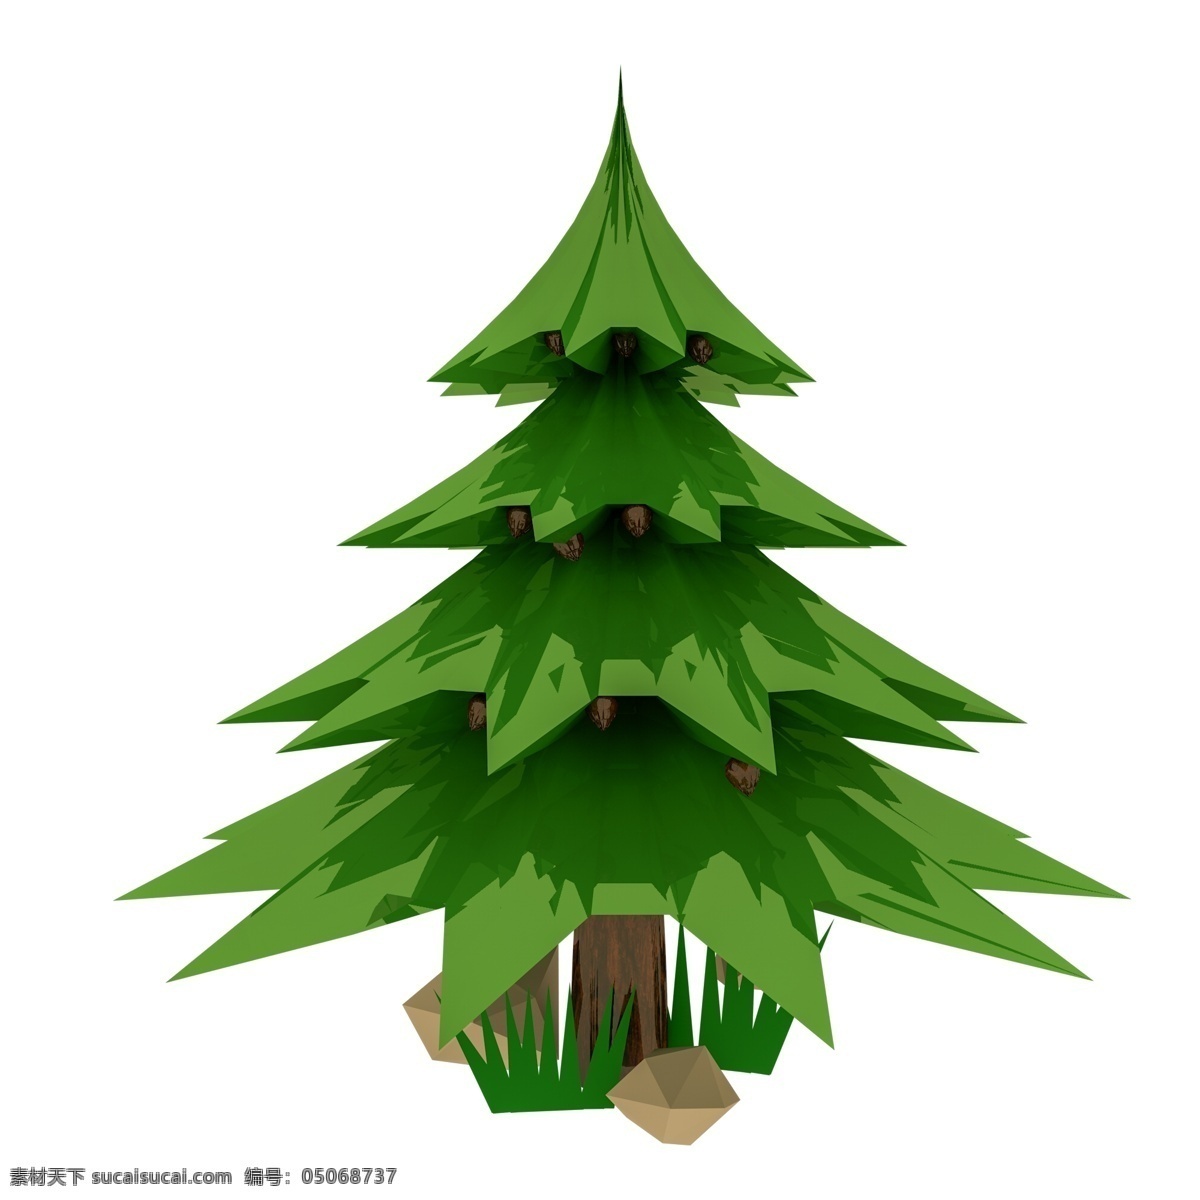 3d 树 植物 卡通 商务 元素 办公 松树 创意 卡通树 可爱 高清 绿植 3d树模型 立体树 商务元素 商用素材 创意树 几何体 多面体 扁平化 果树 写实 景观 原创psd